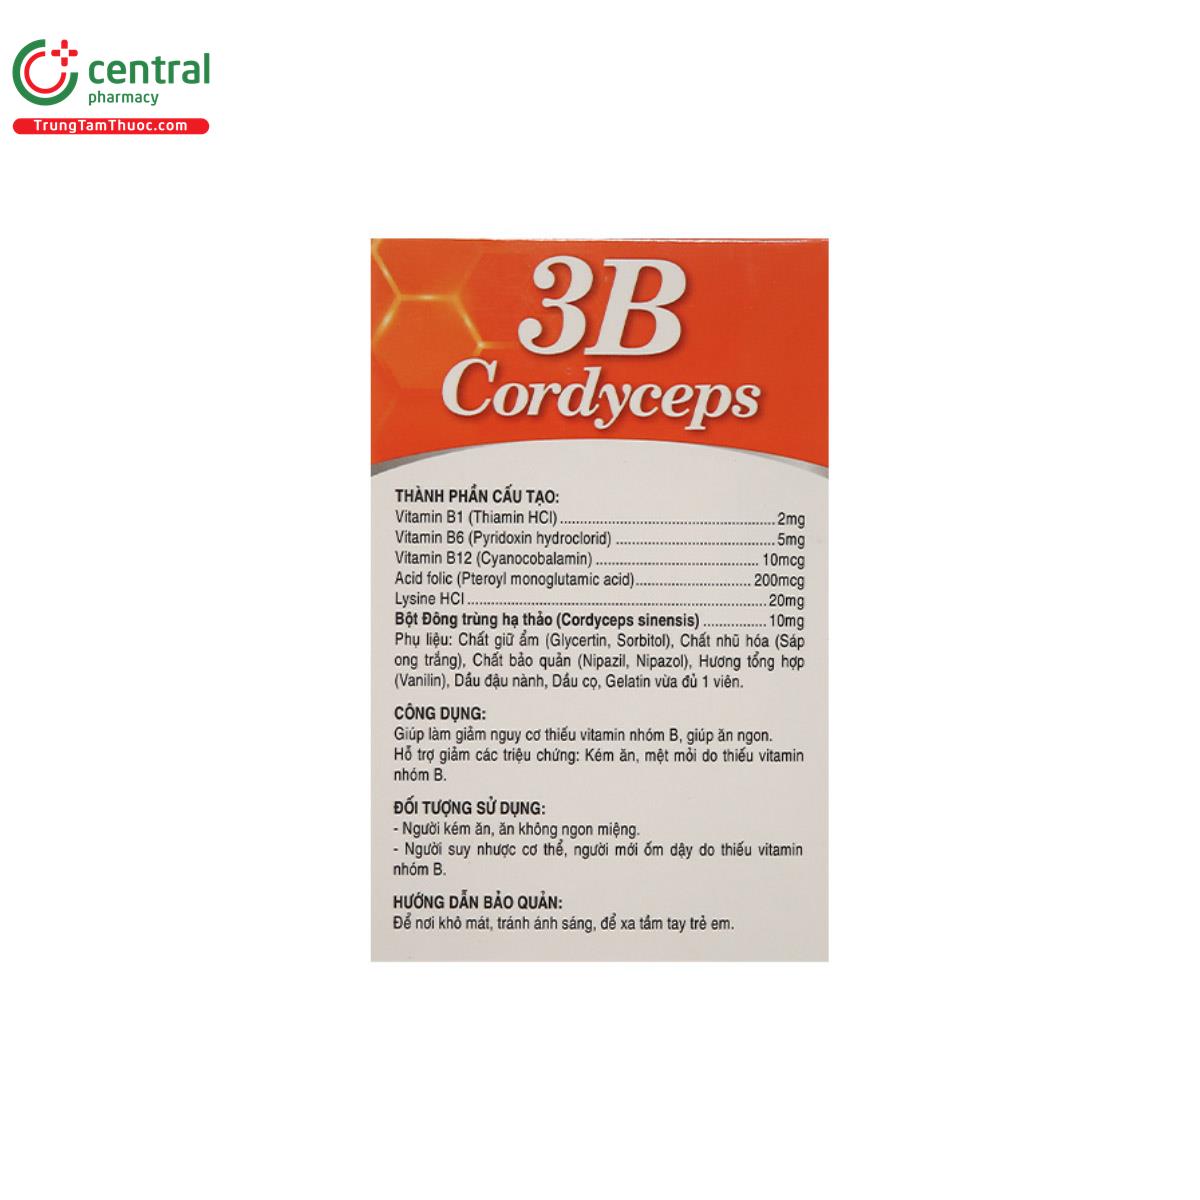 3B Cordyceps